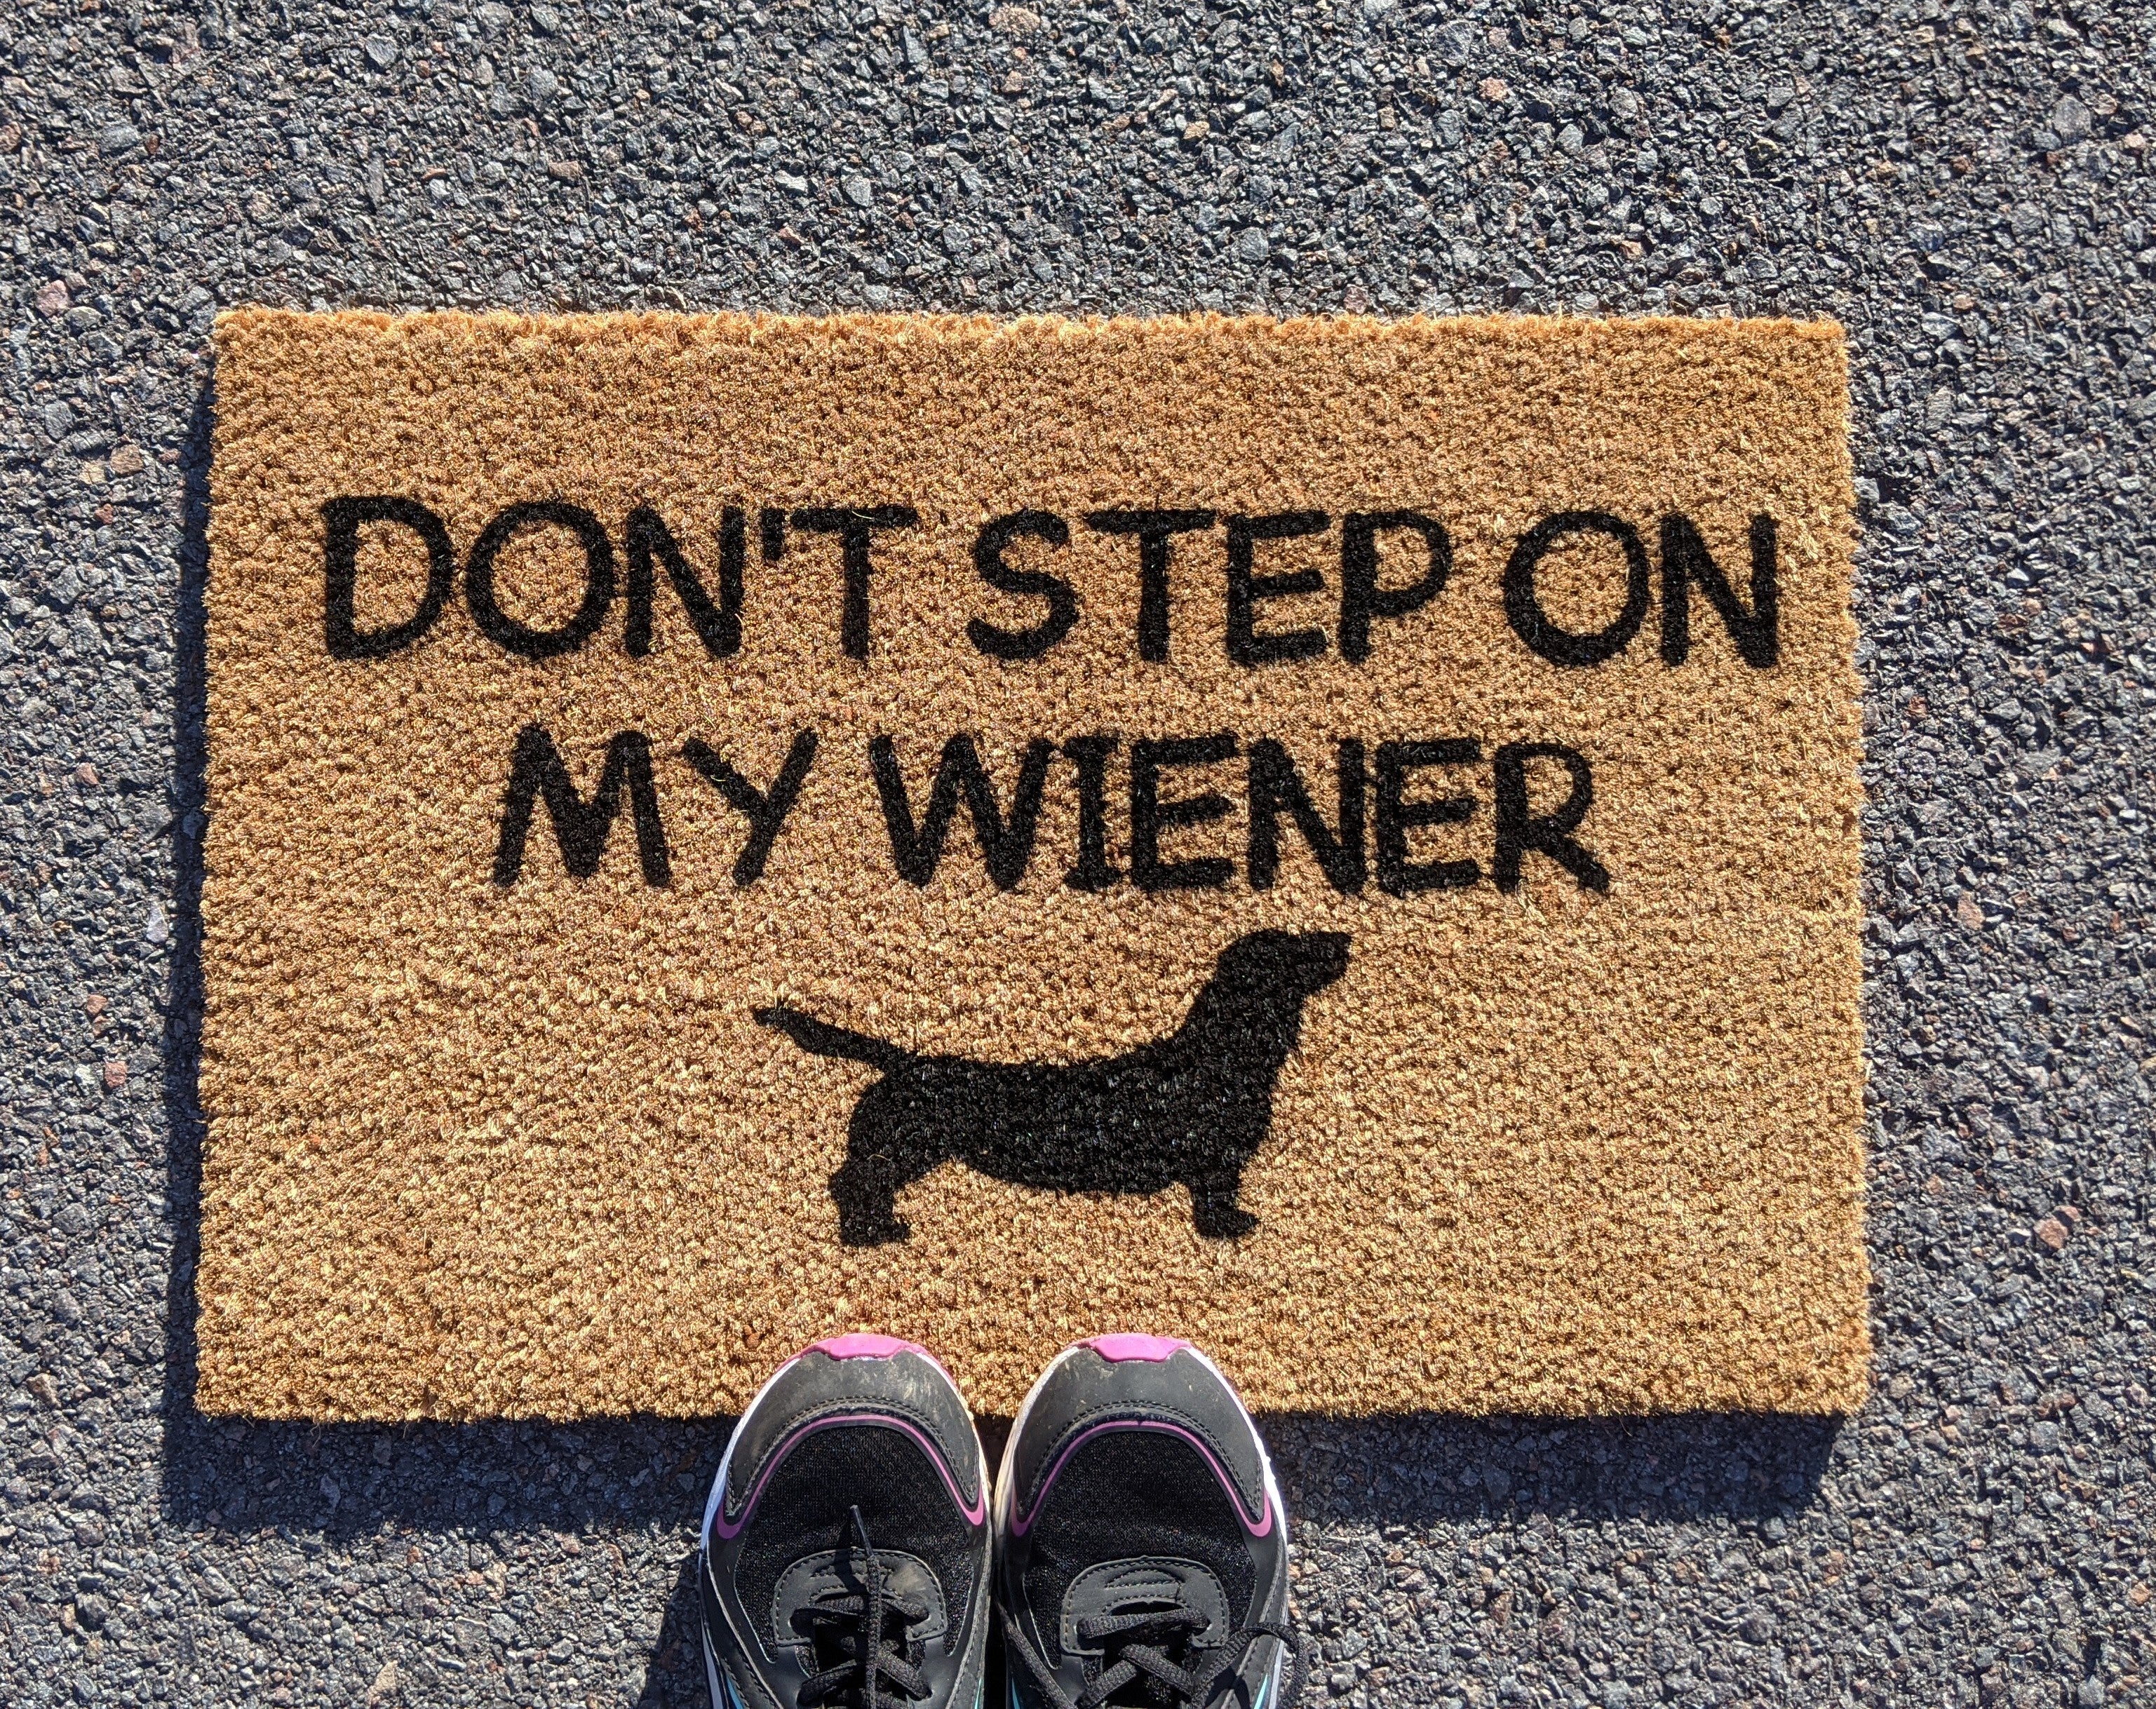 Don't Trip Over My Wiener Doormat Weiner Doormat 